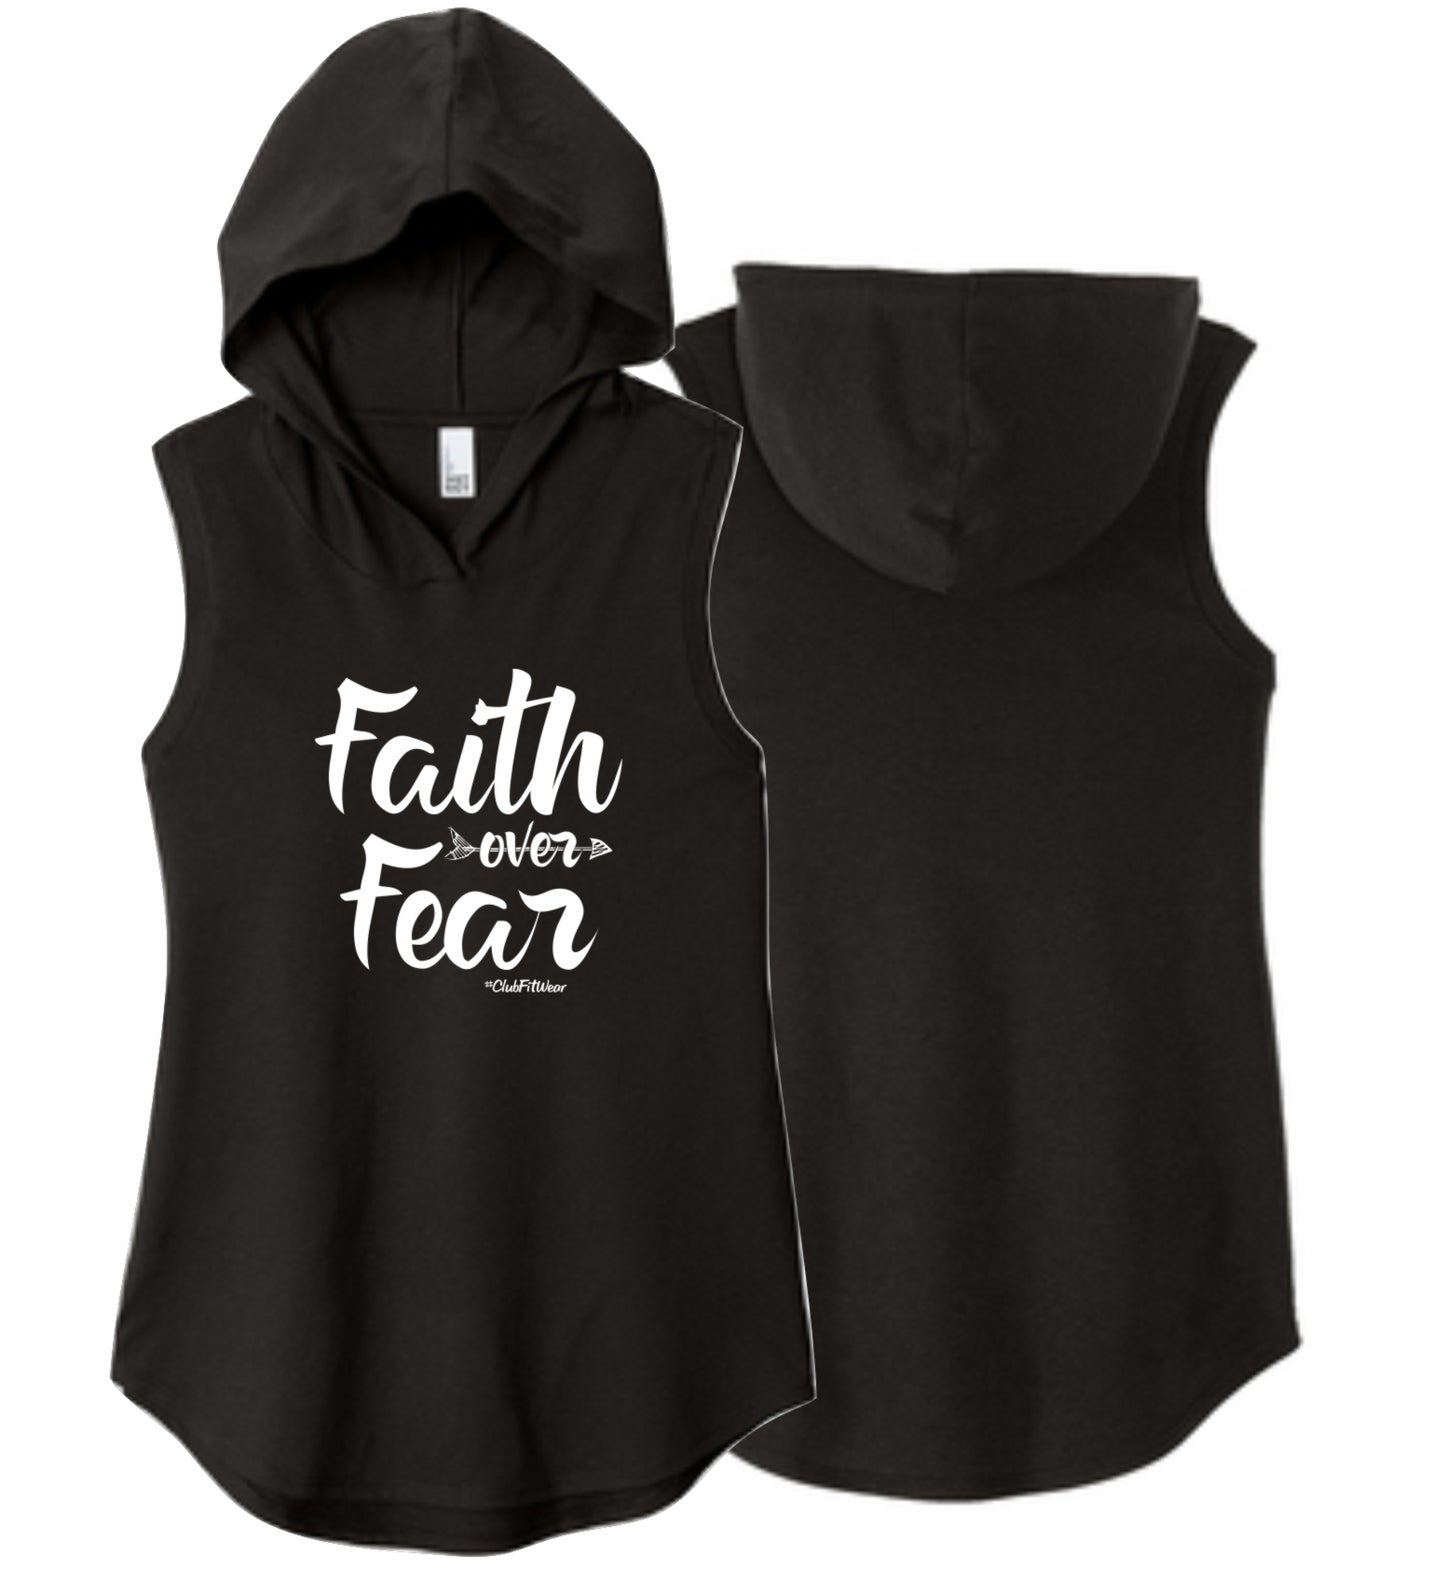 Faith over Fear - Sleeveless Hoodie